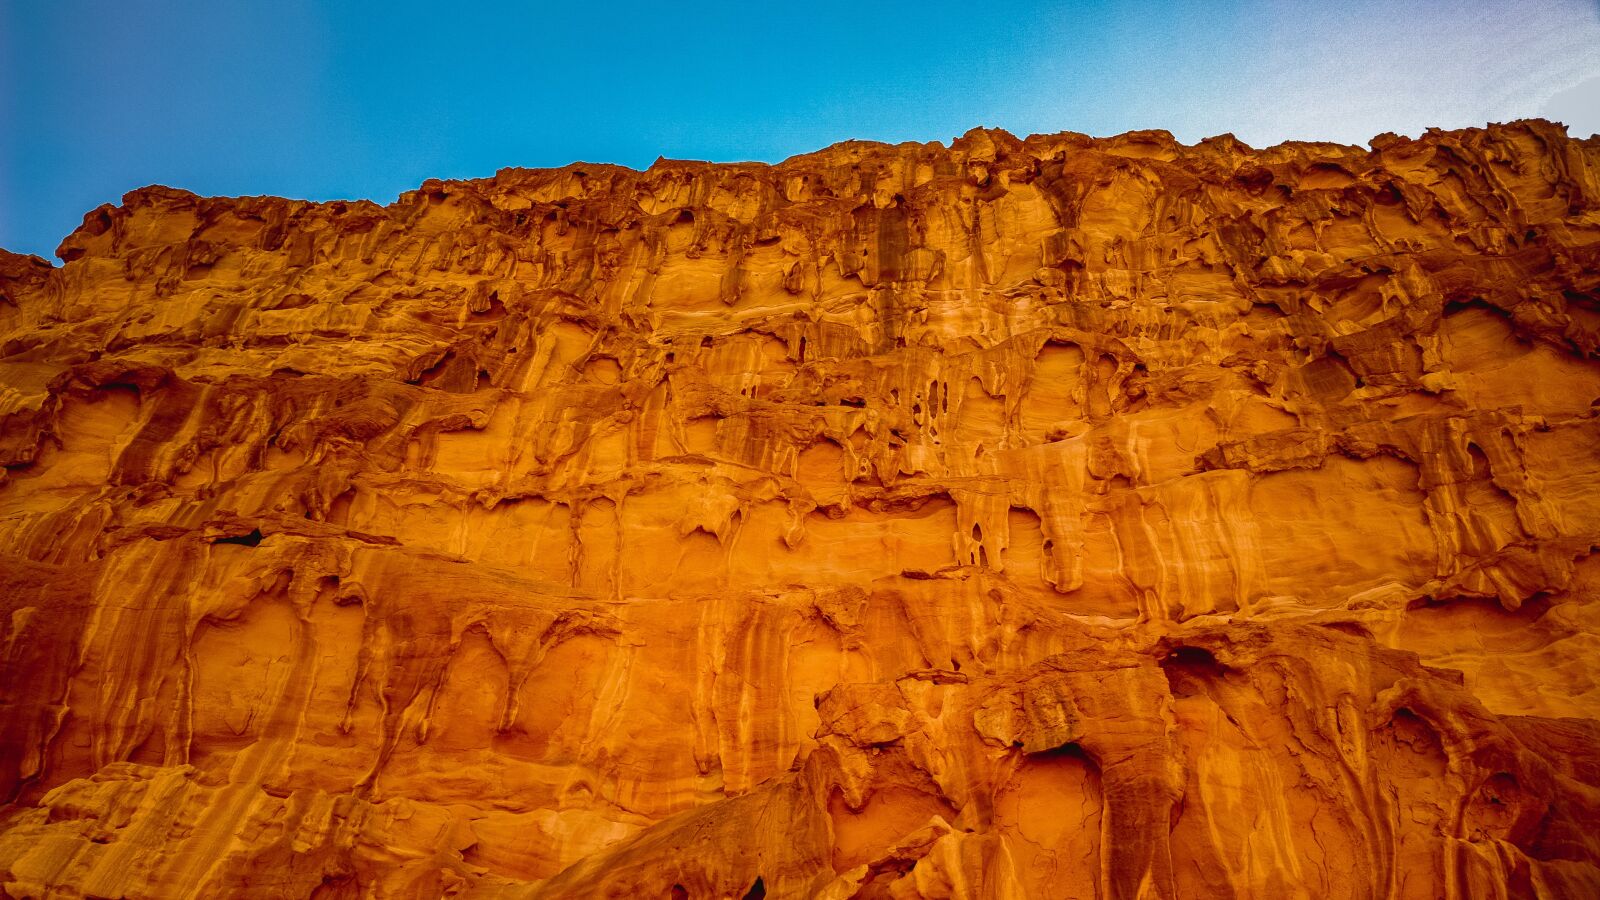 Nokia 808 PureView sample photo. Petra, jordan, cliff photography